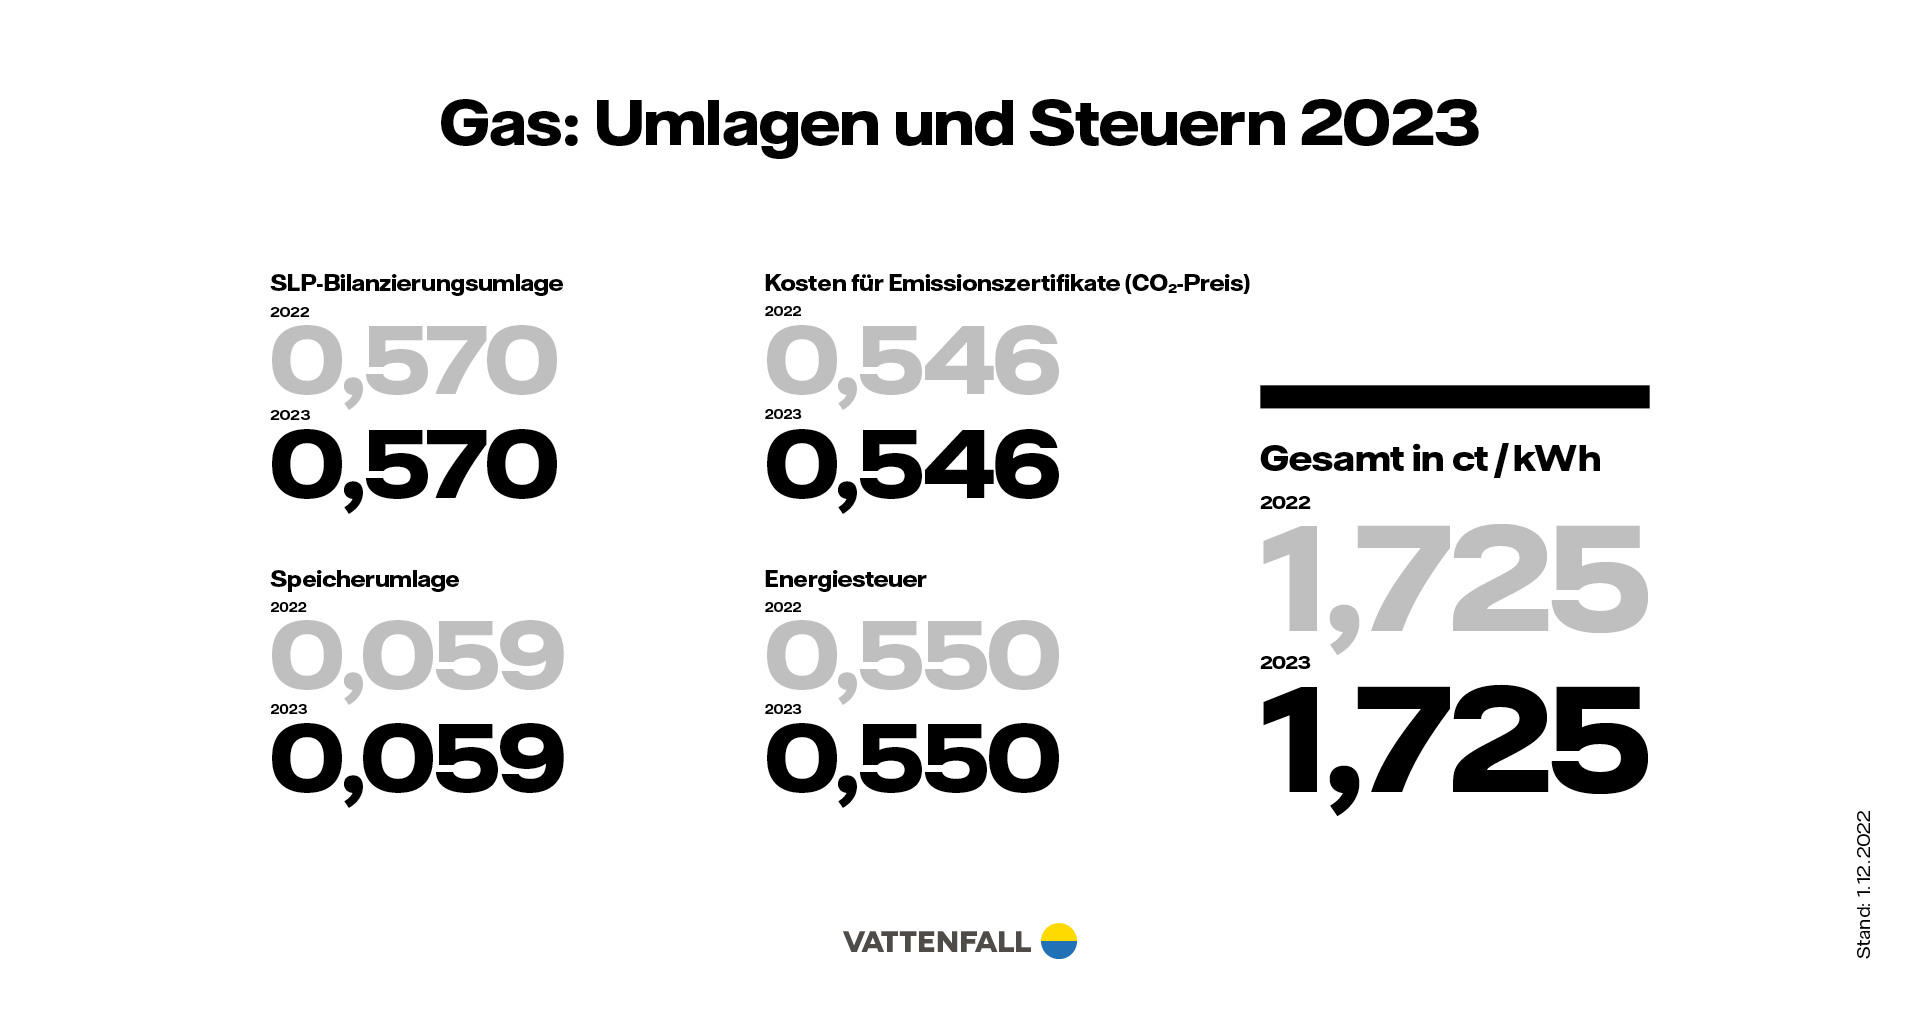 Umlagen und Steuern Gas 2023